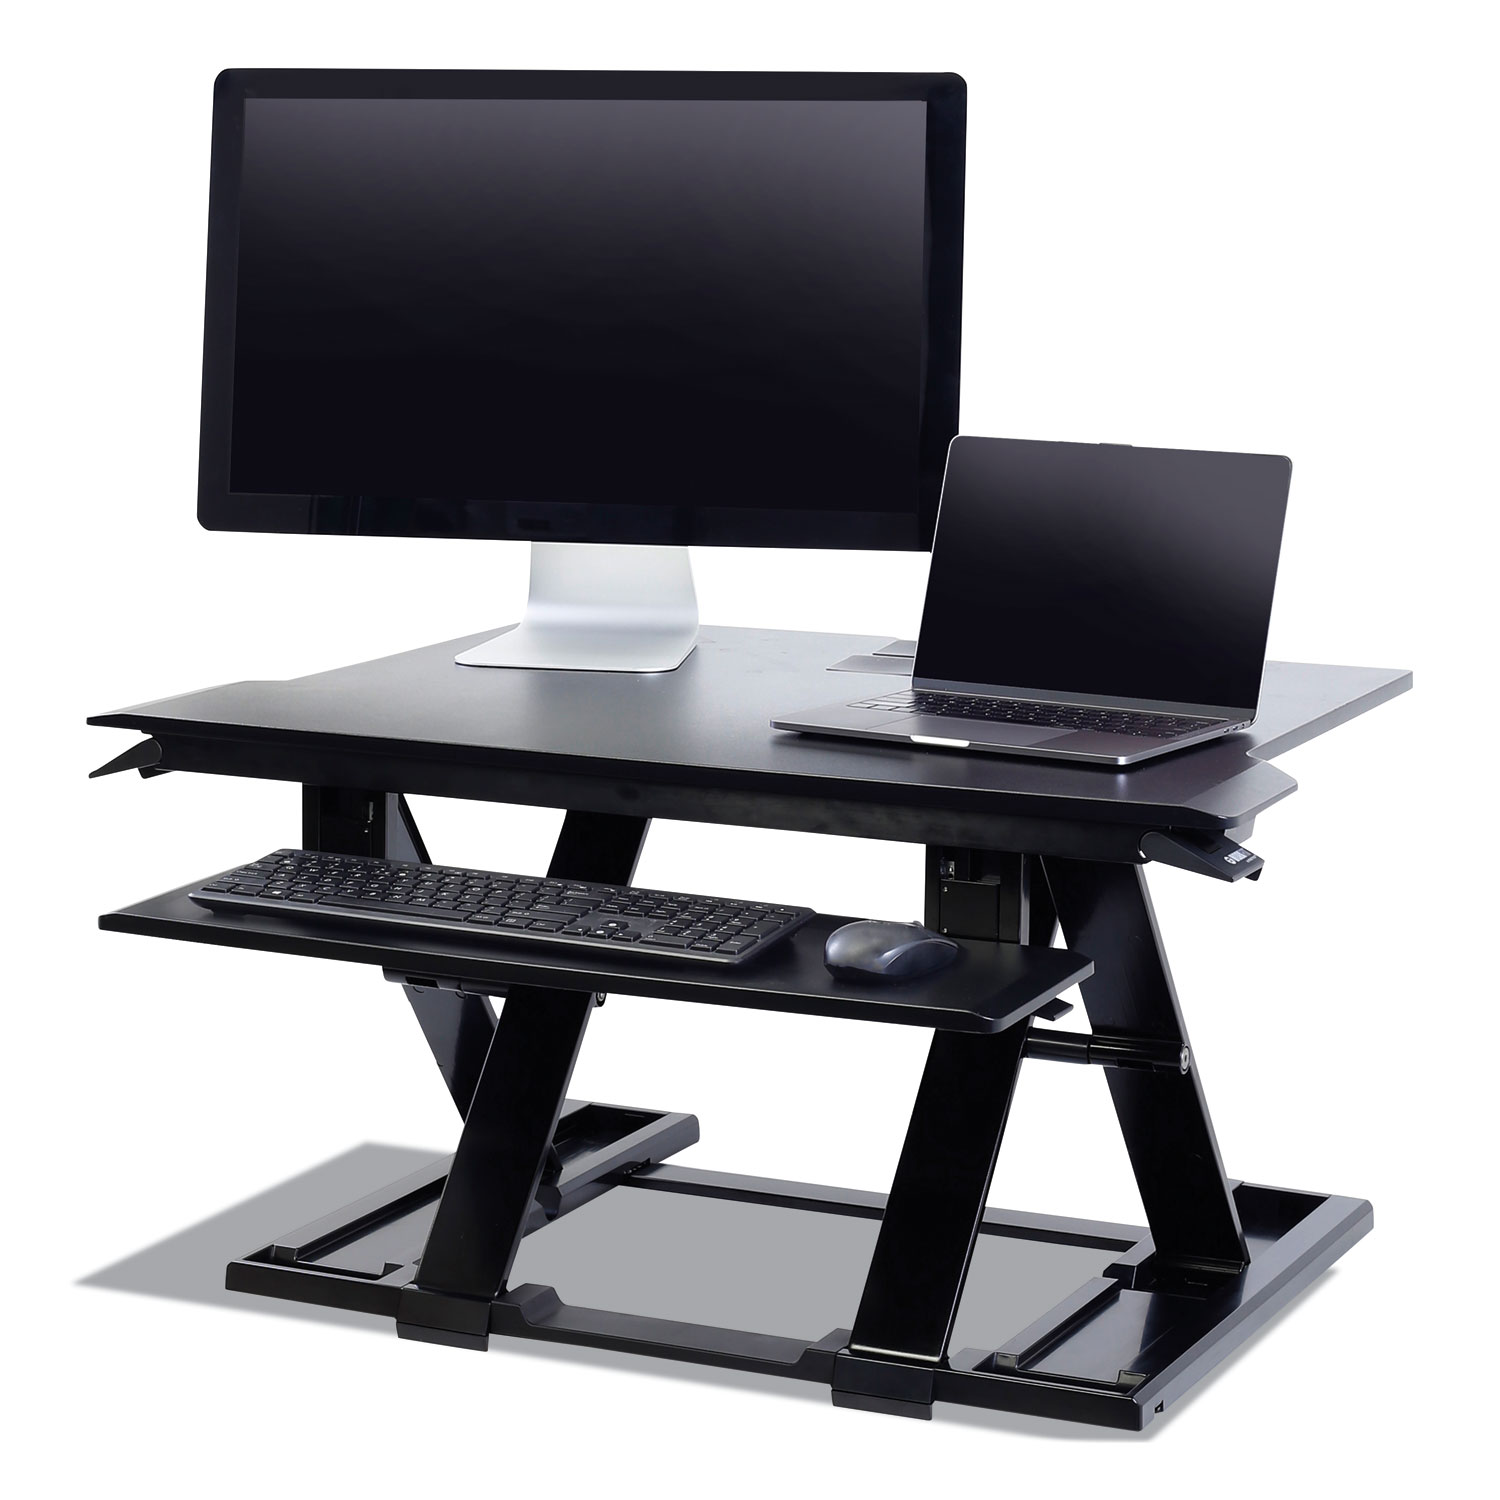  WorkFit by Ergotron 33467921 WorkFit TX Standing Desk Converter, 36.6w x 33d x 19h, Black (ERG33467921) 